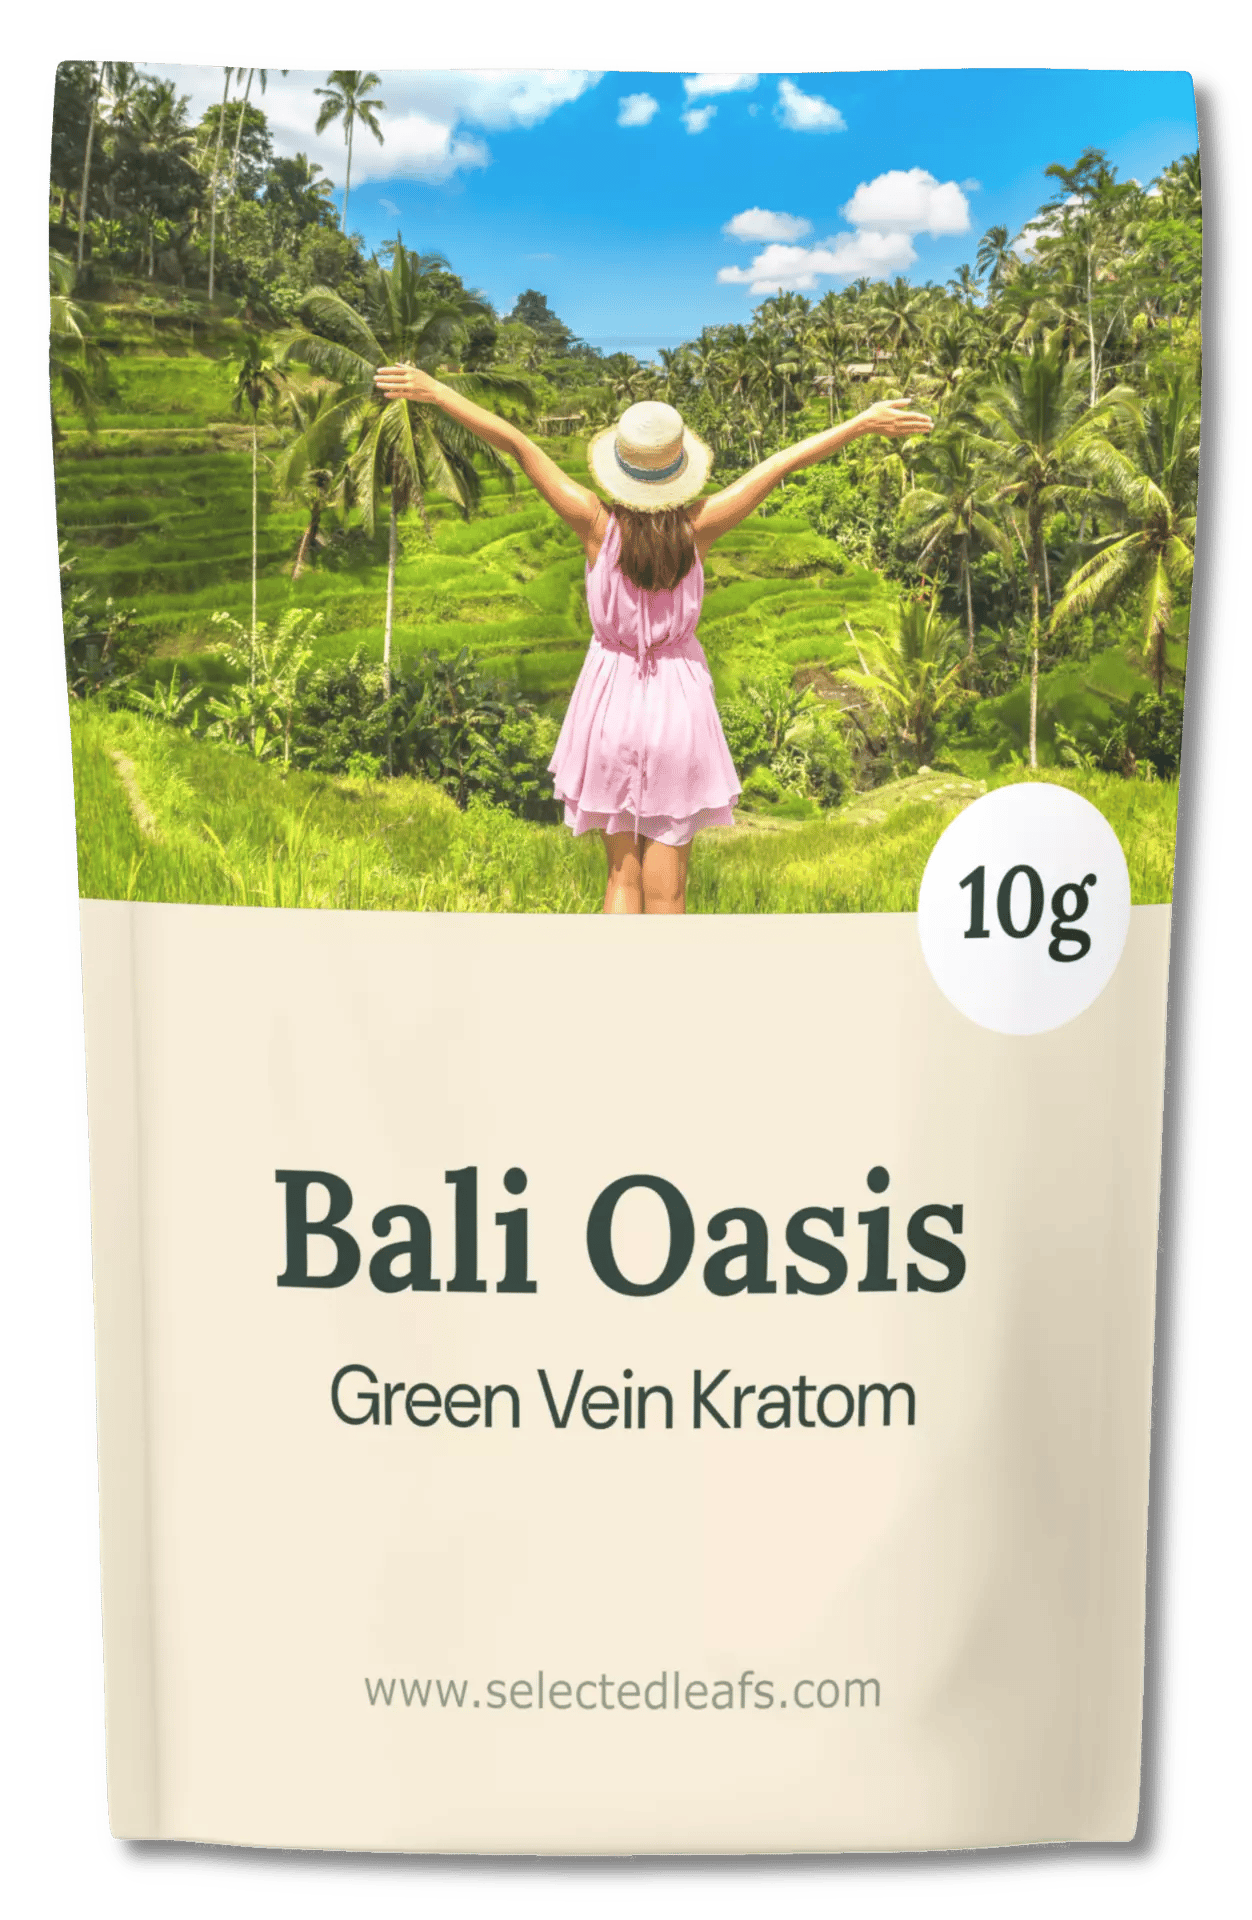 Bali Oasis